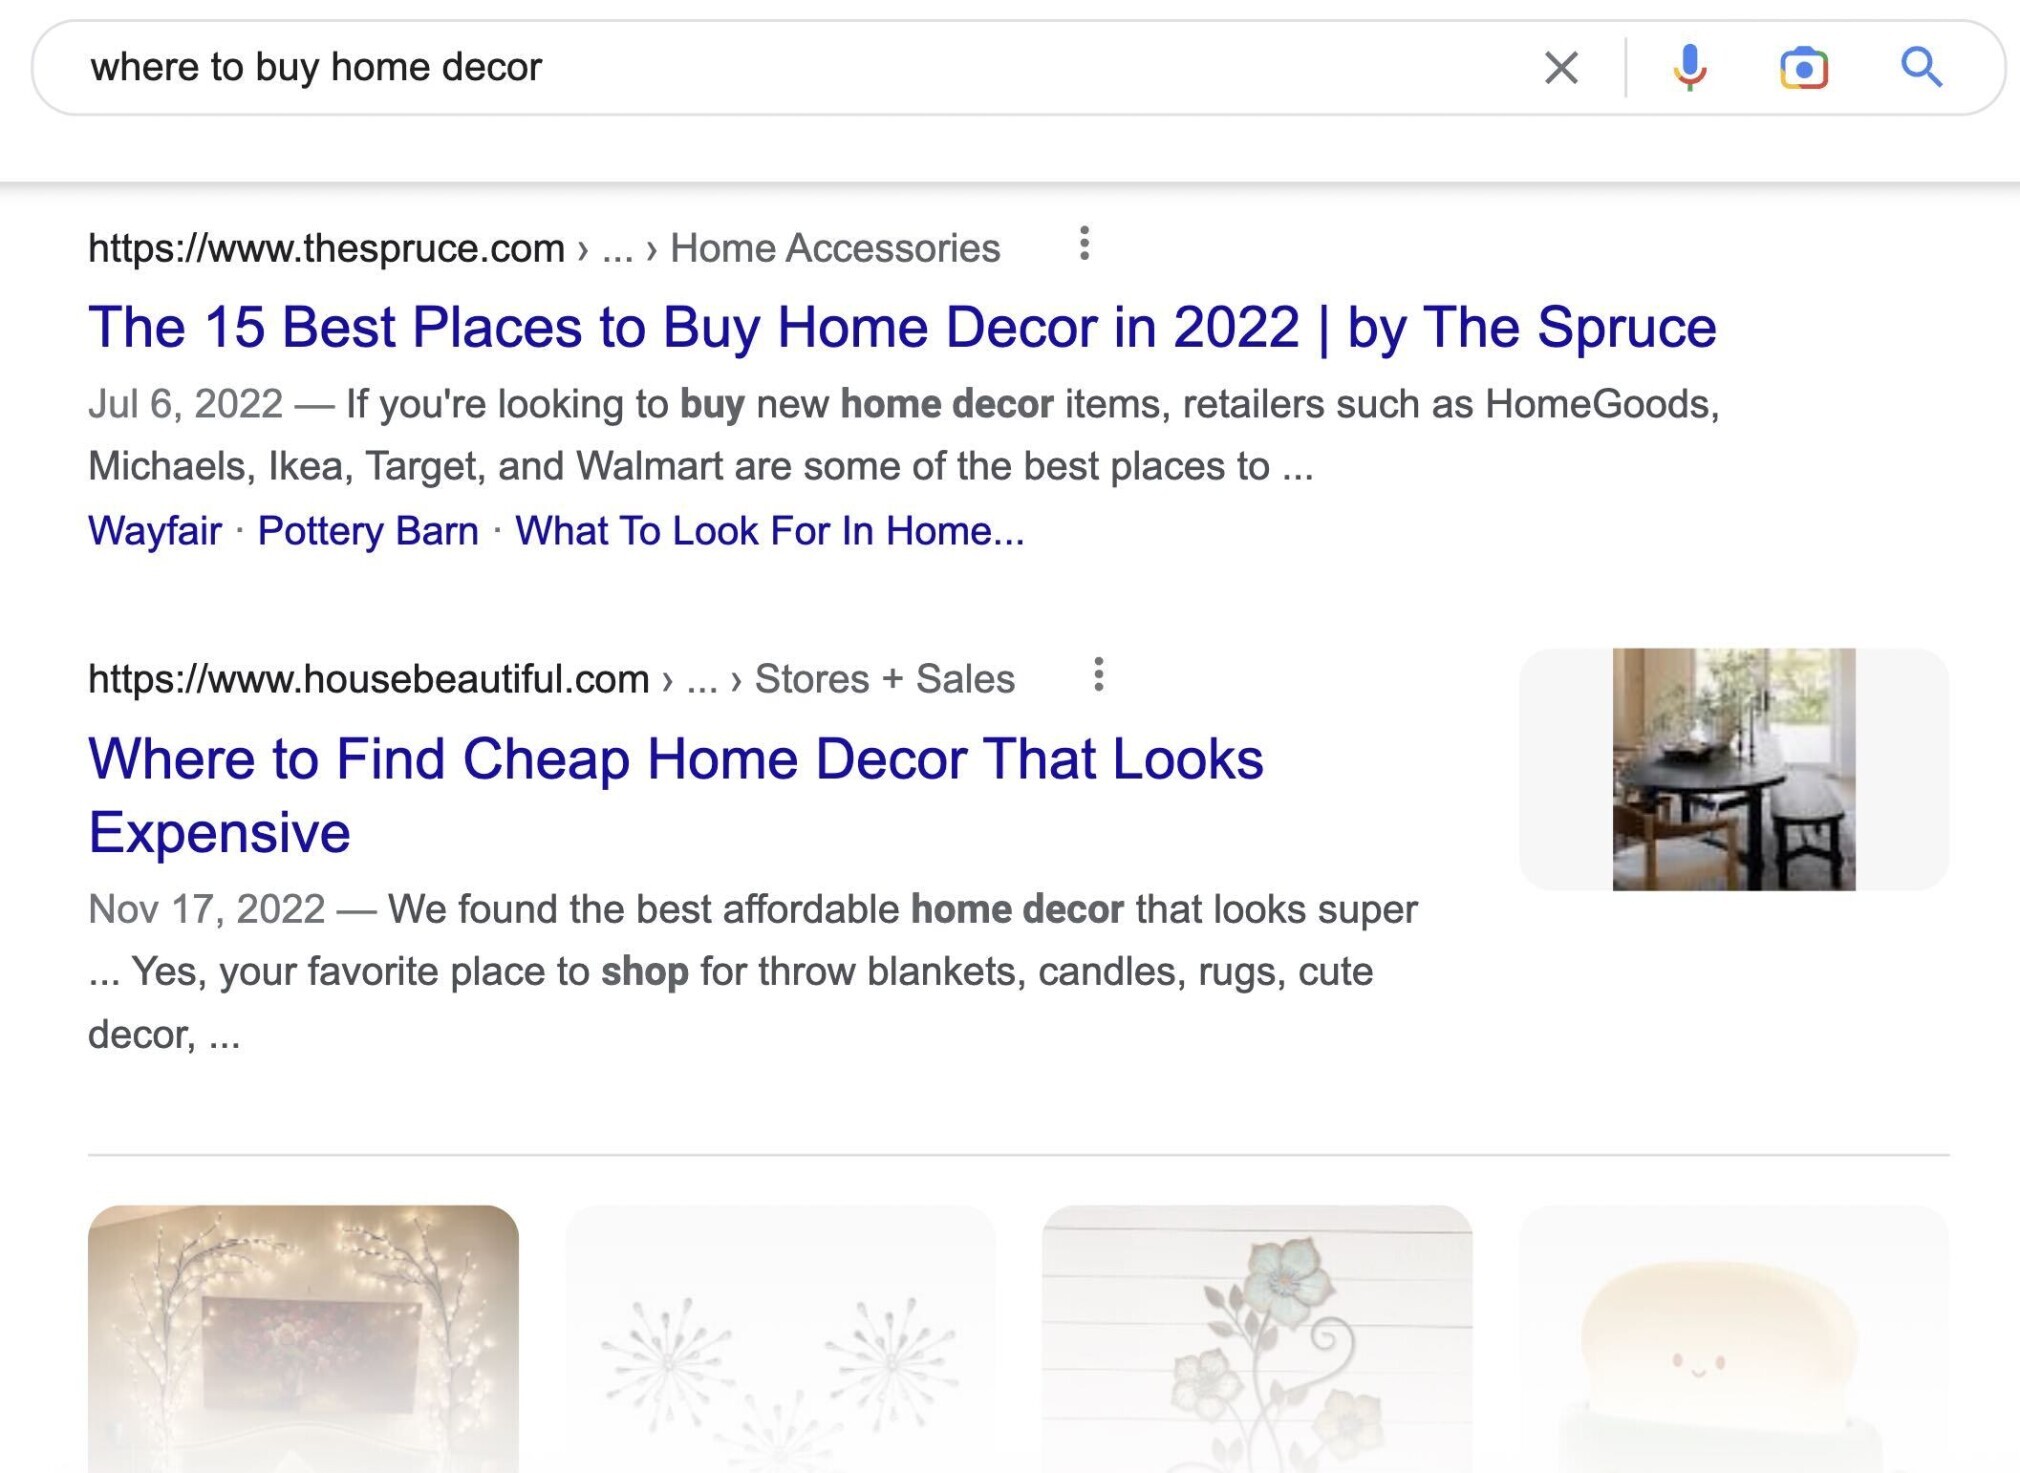 where to buy home decor serp